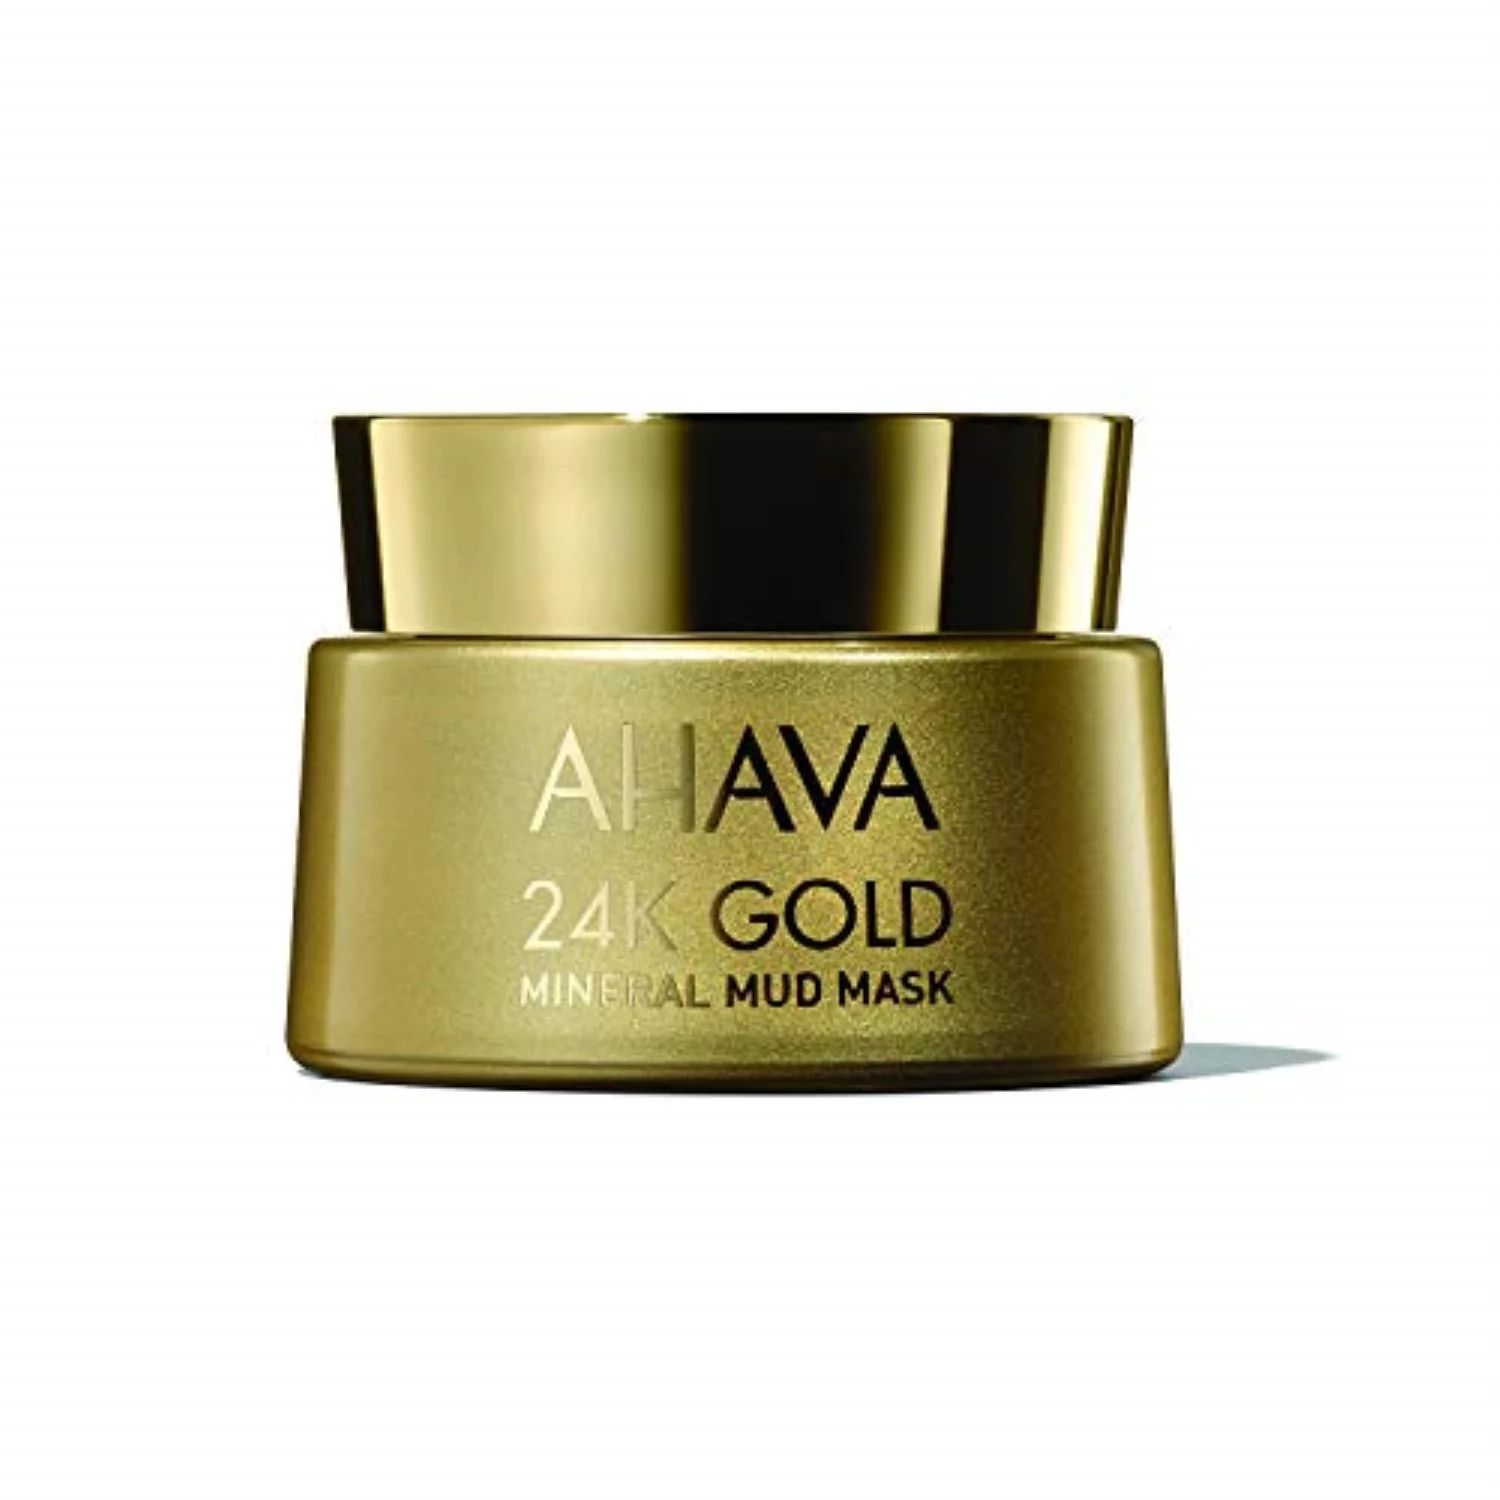 ahava 24k gold mineral mud mask, 1.7 fl. oz | Walmart (US)